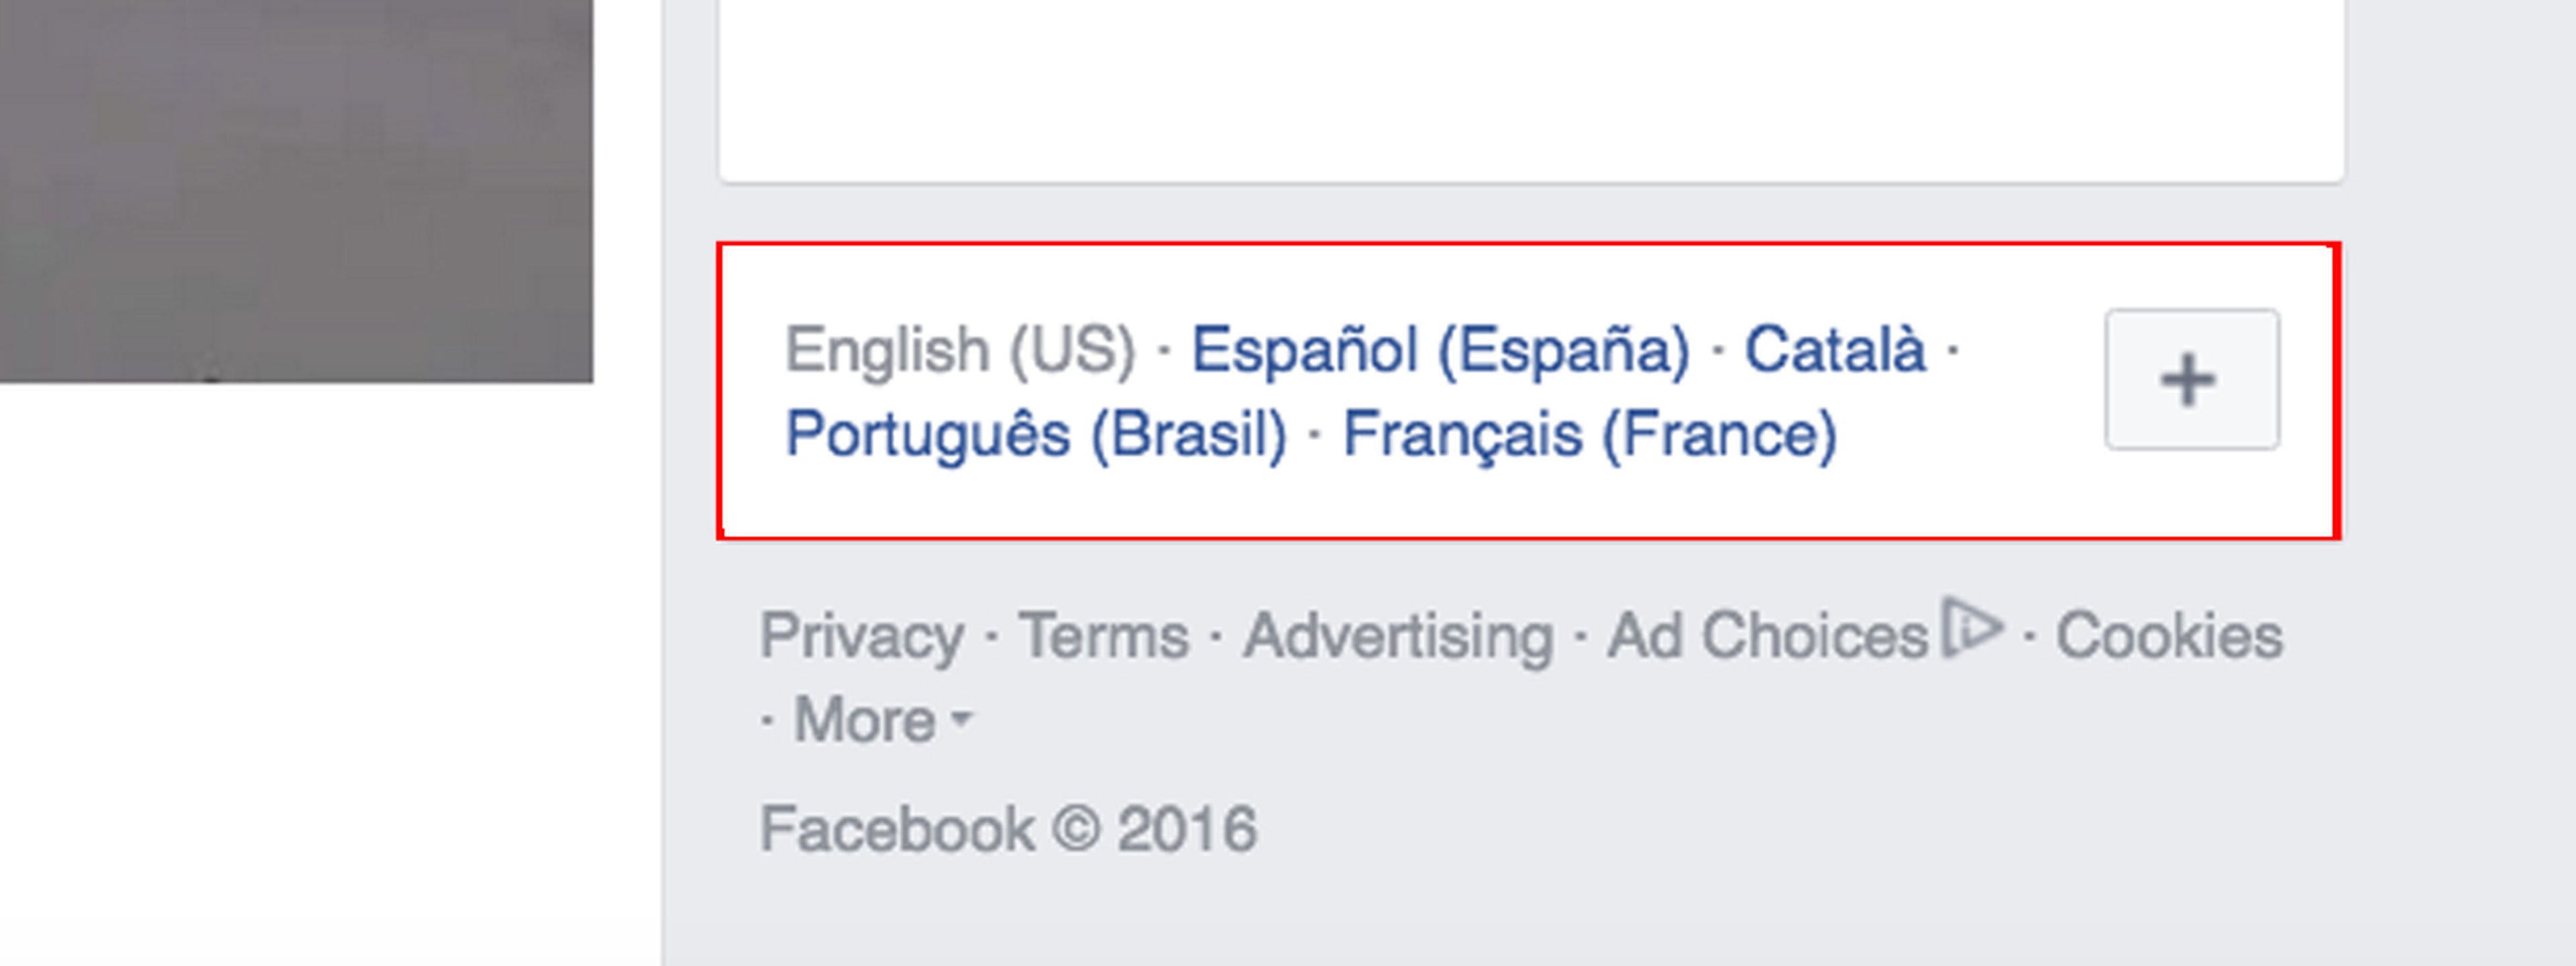 El método más fácil para cambiar de idioma el Facebook